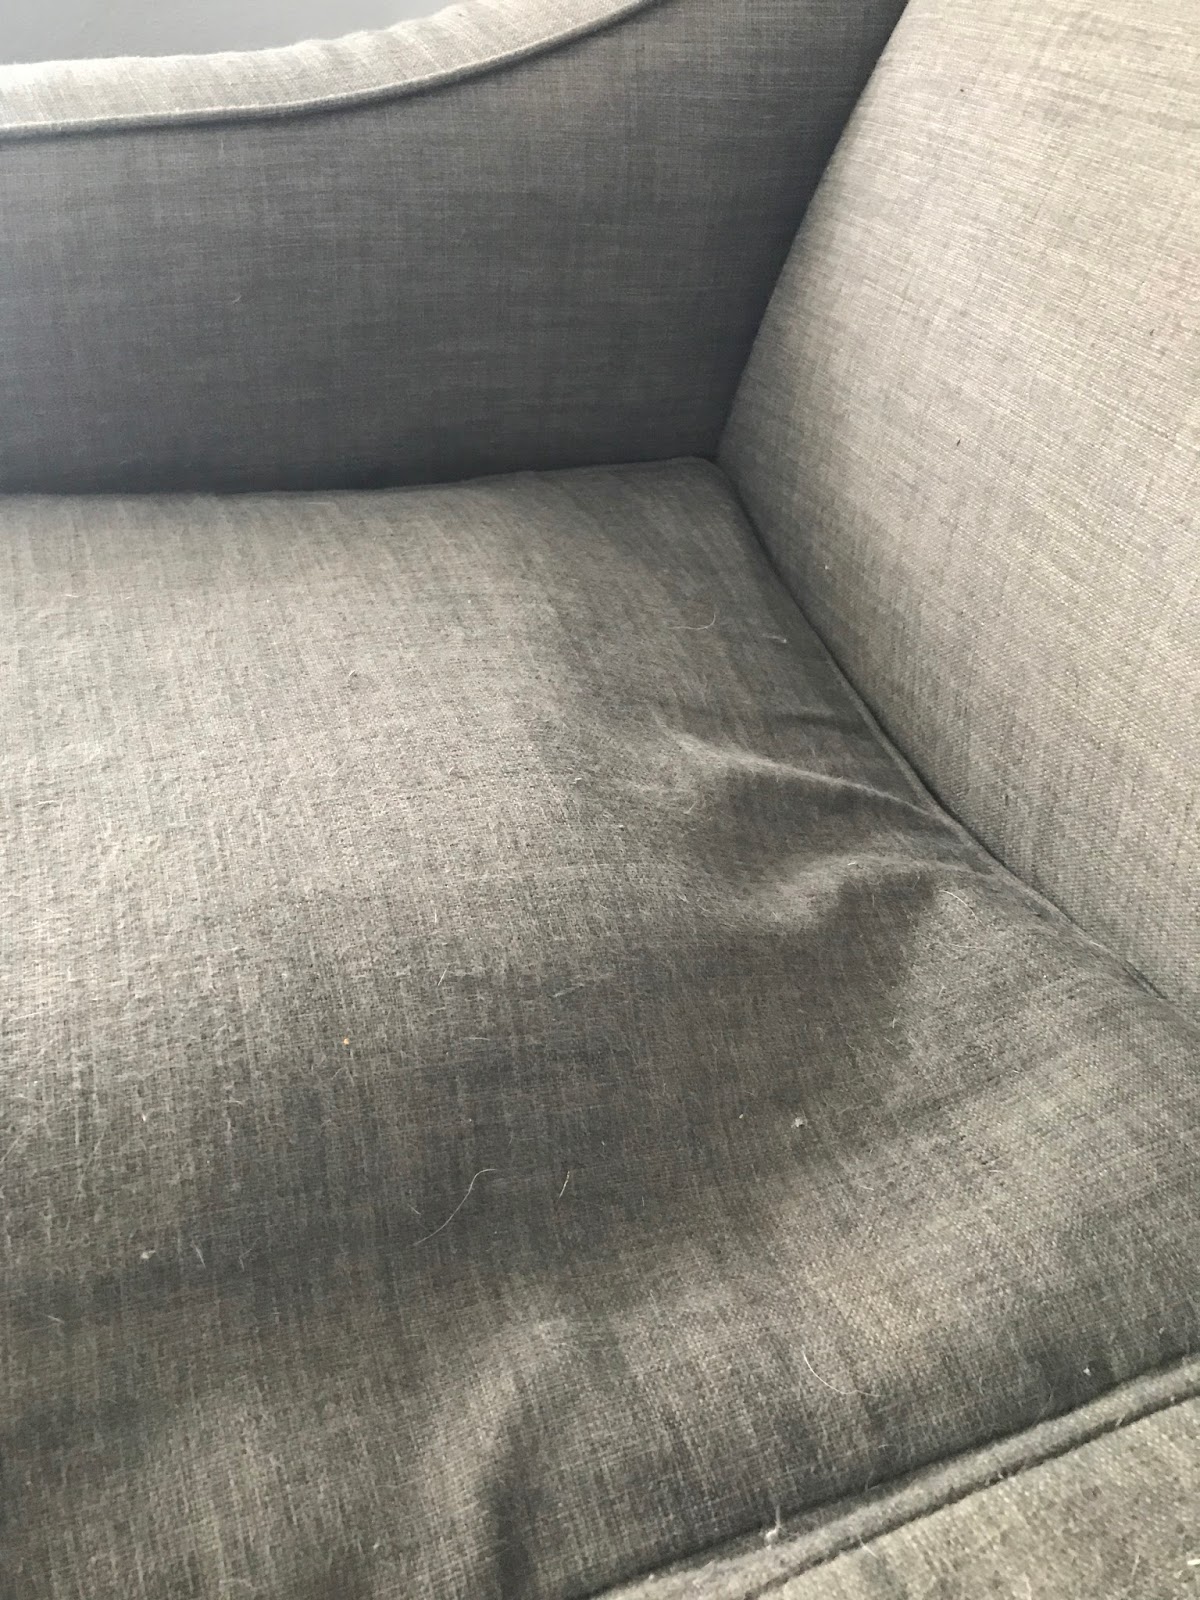 fix broken spring in couch